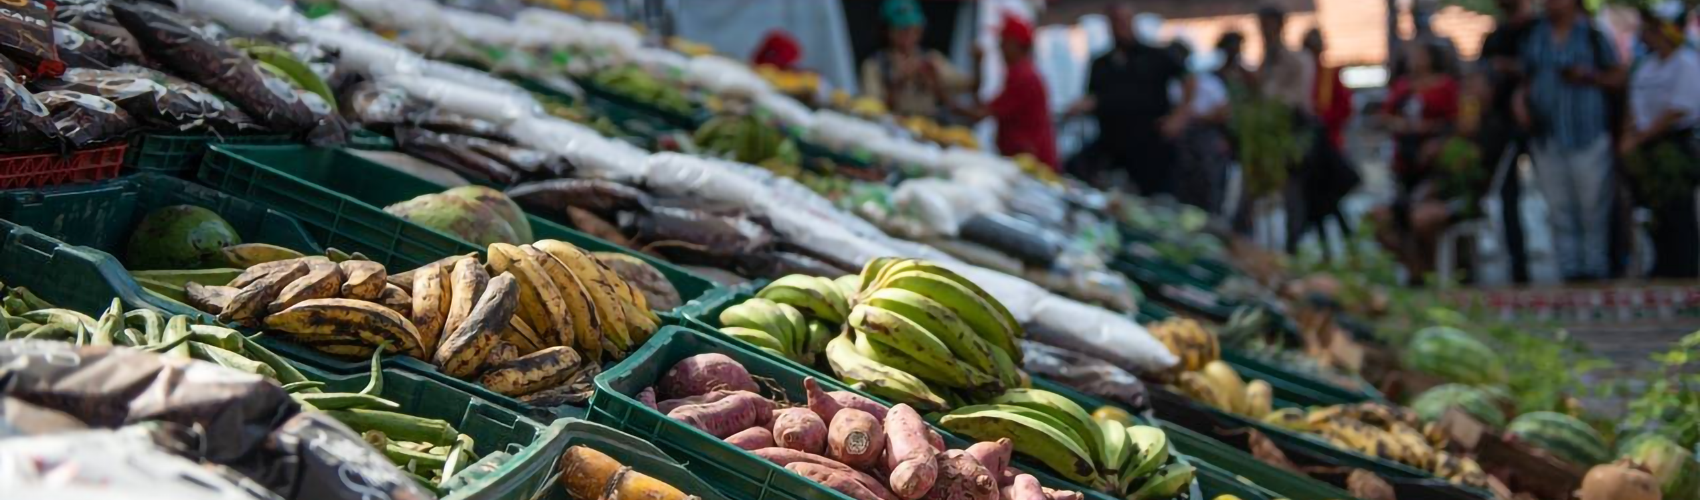 Feira da Reforma Agrária mostra que comida boa e saudável vem com luta pela terra, diz MST